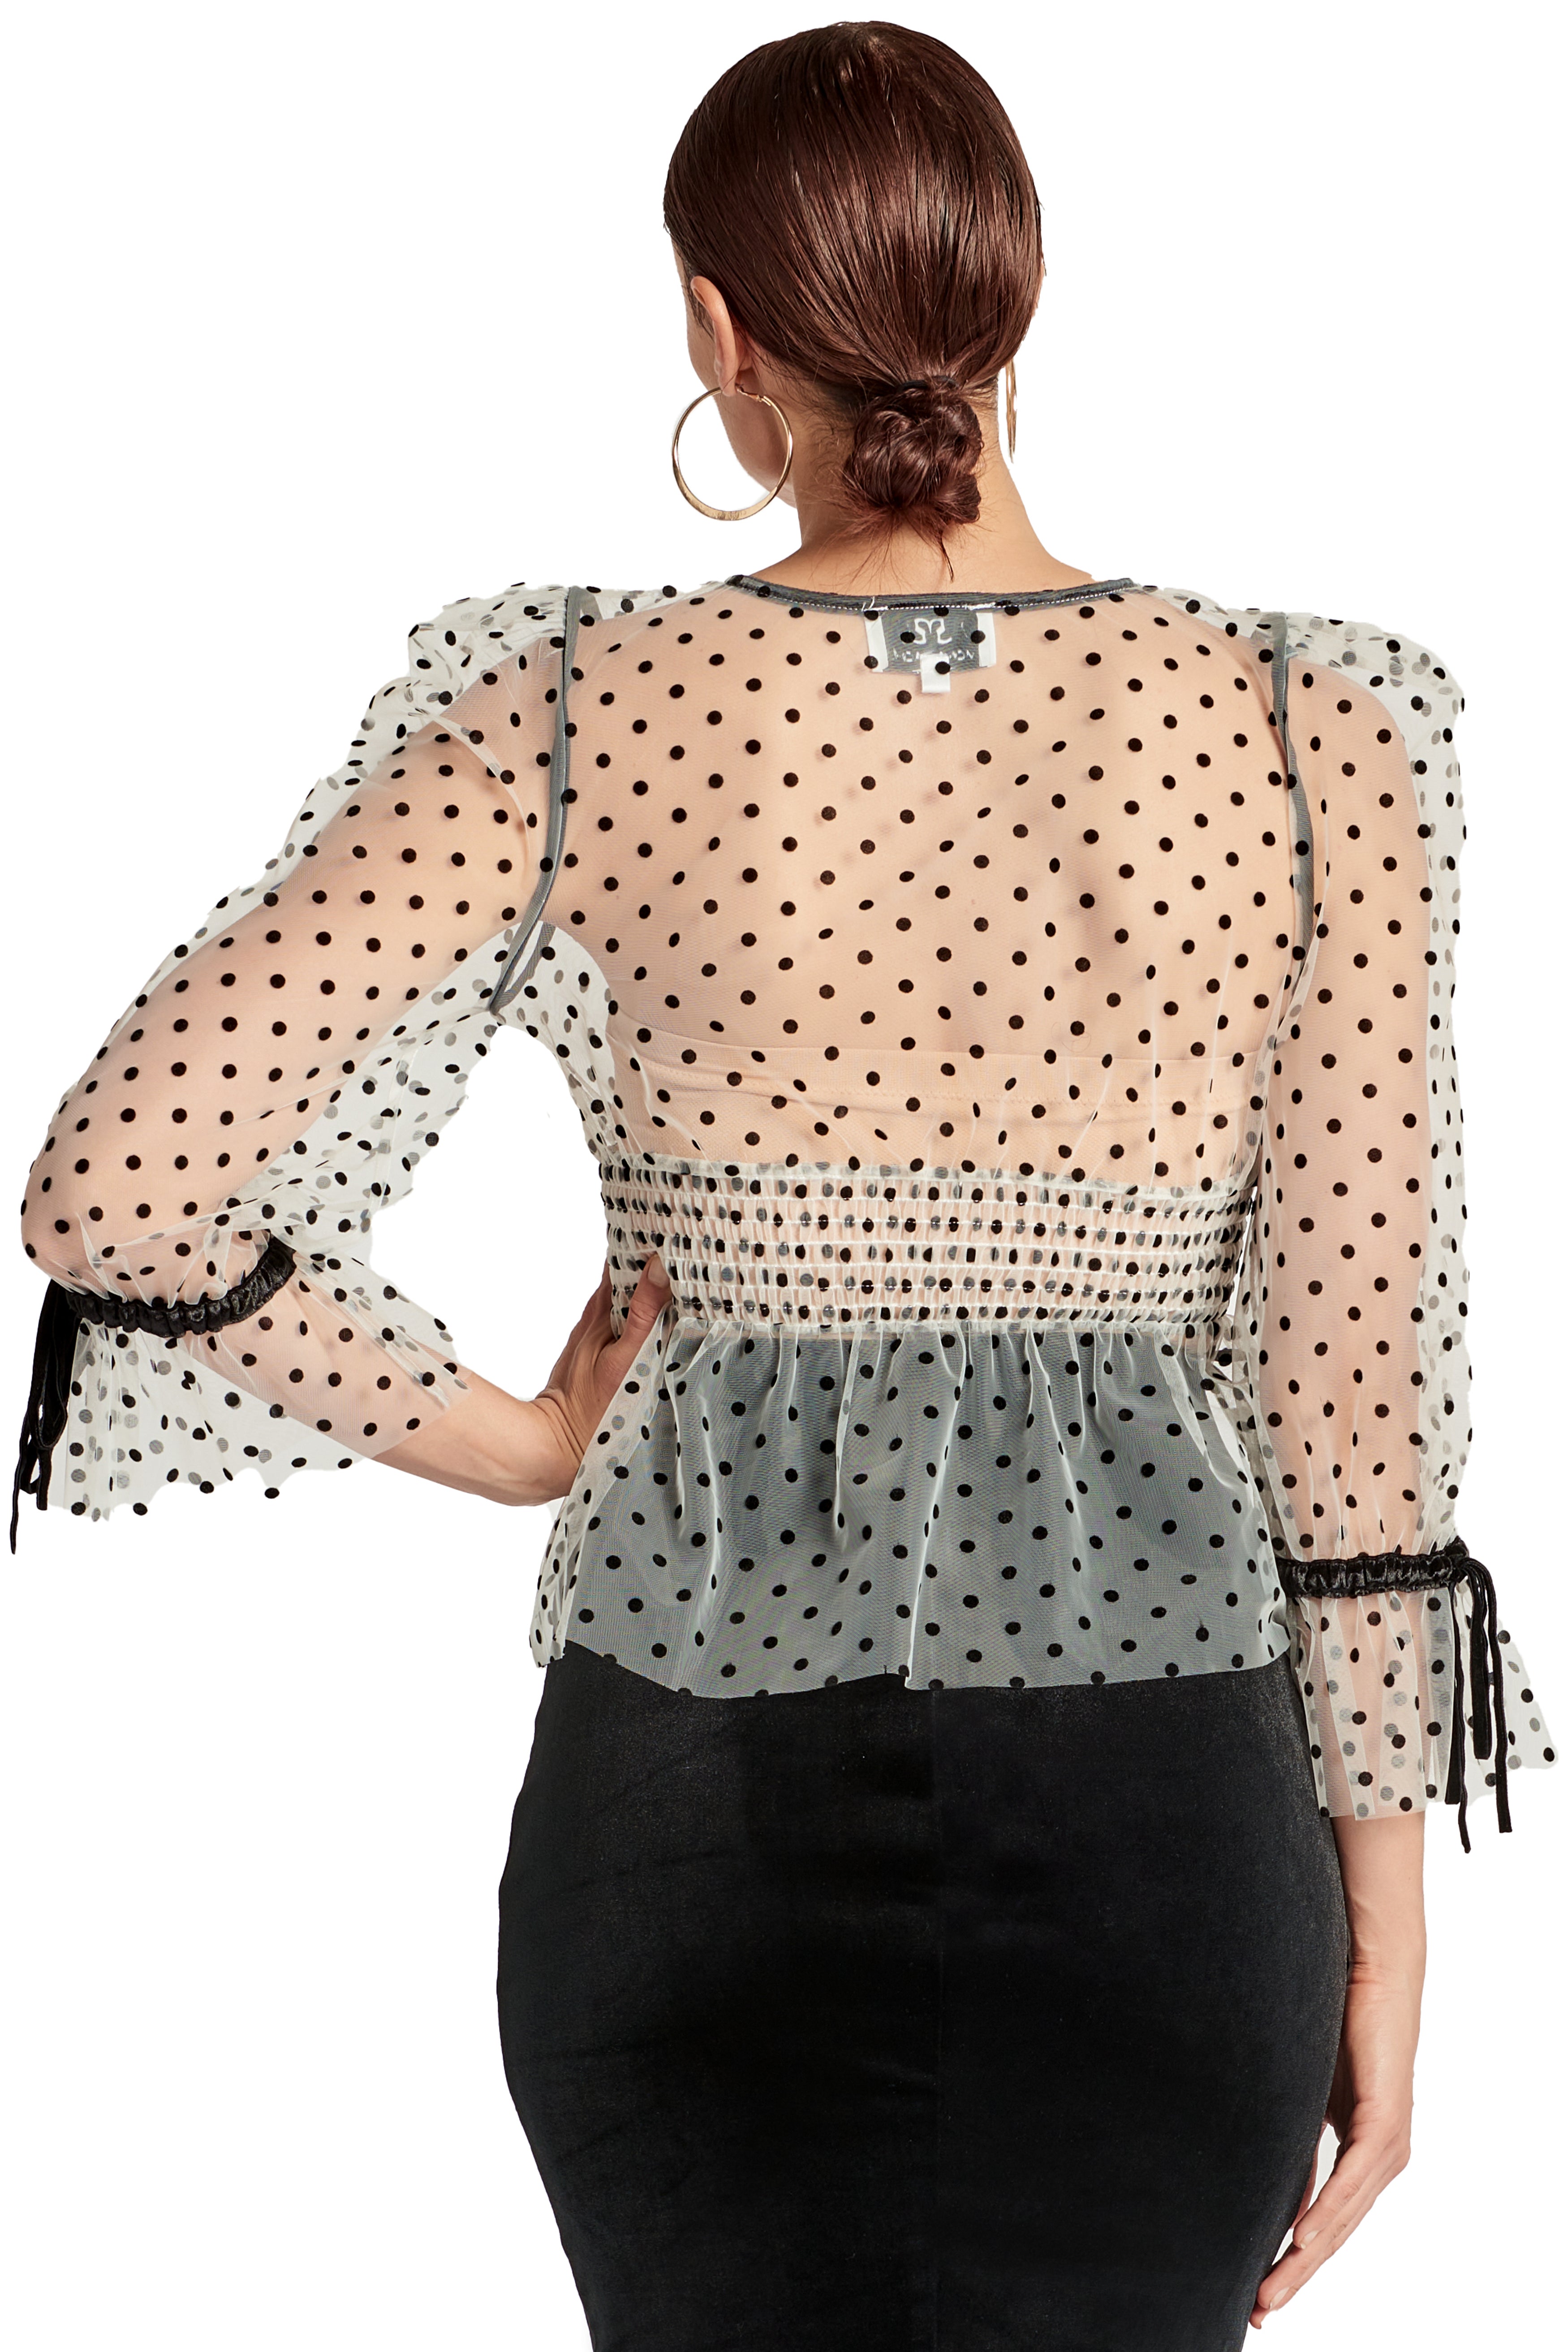 Back view of model wearing the Simona Maghen J'lene Top, white mesh black polka dot 3/4 puff sleeve peplum hem v-neck top with black velvet buttons and bows.